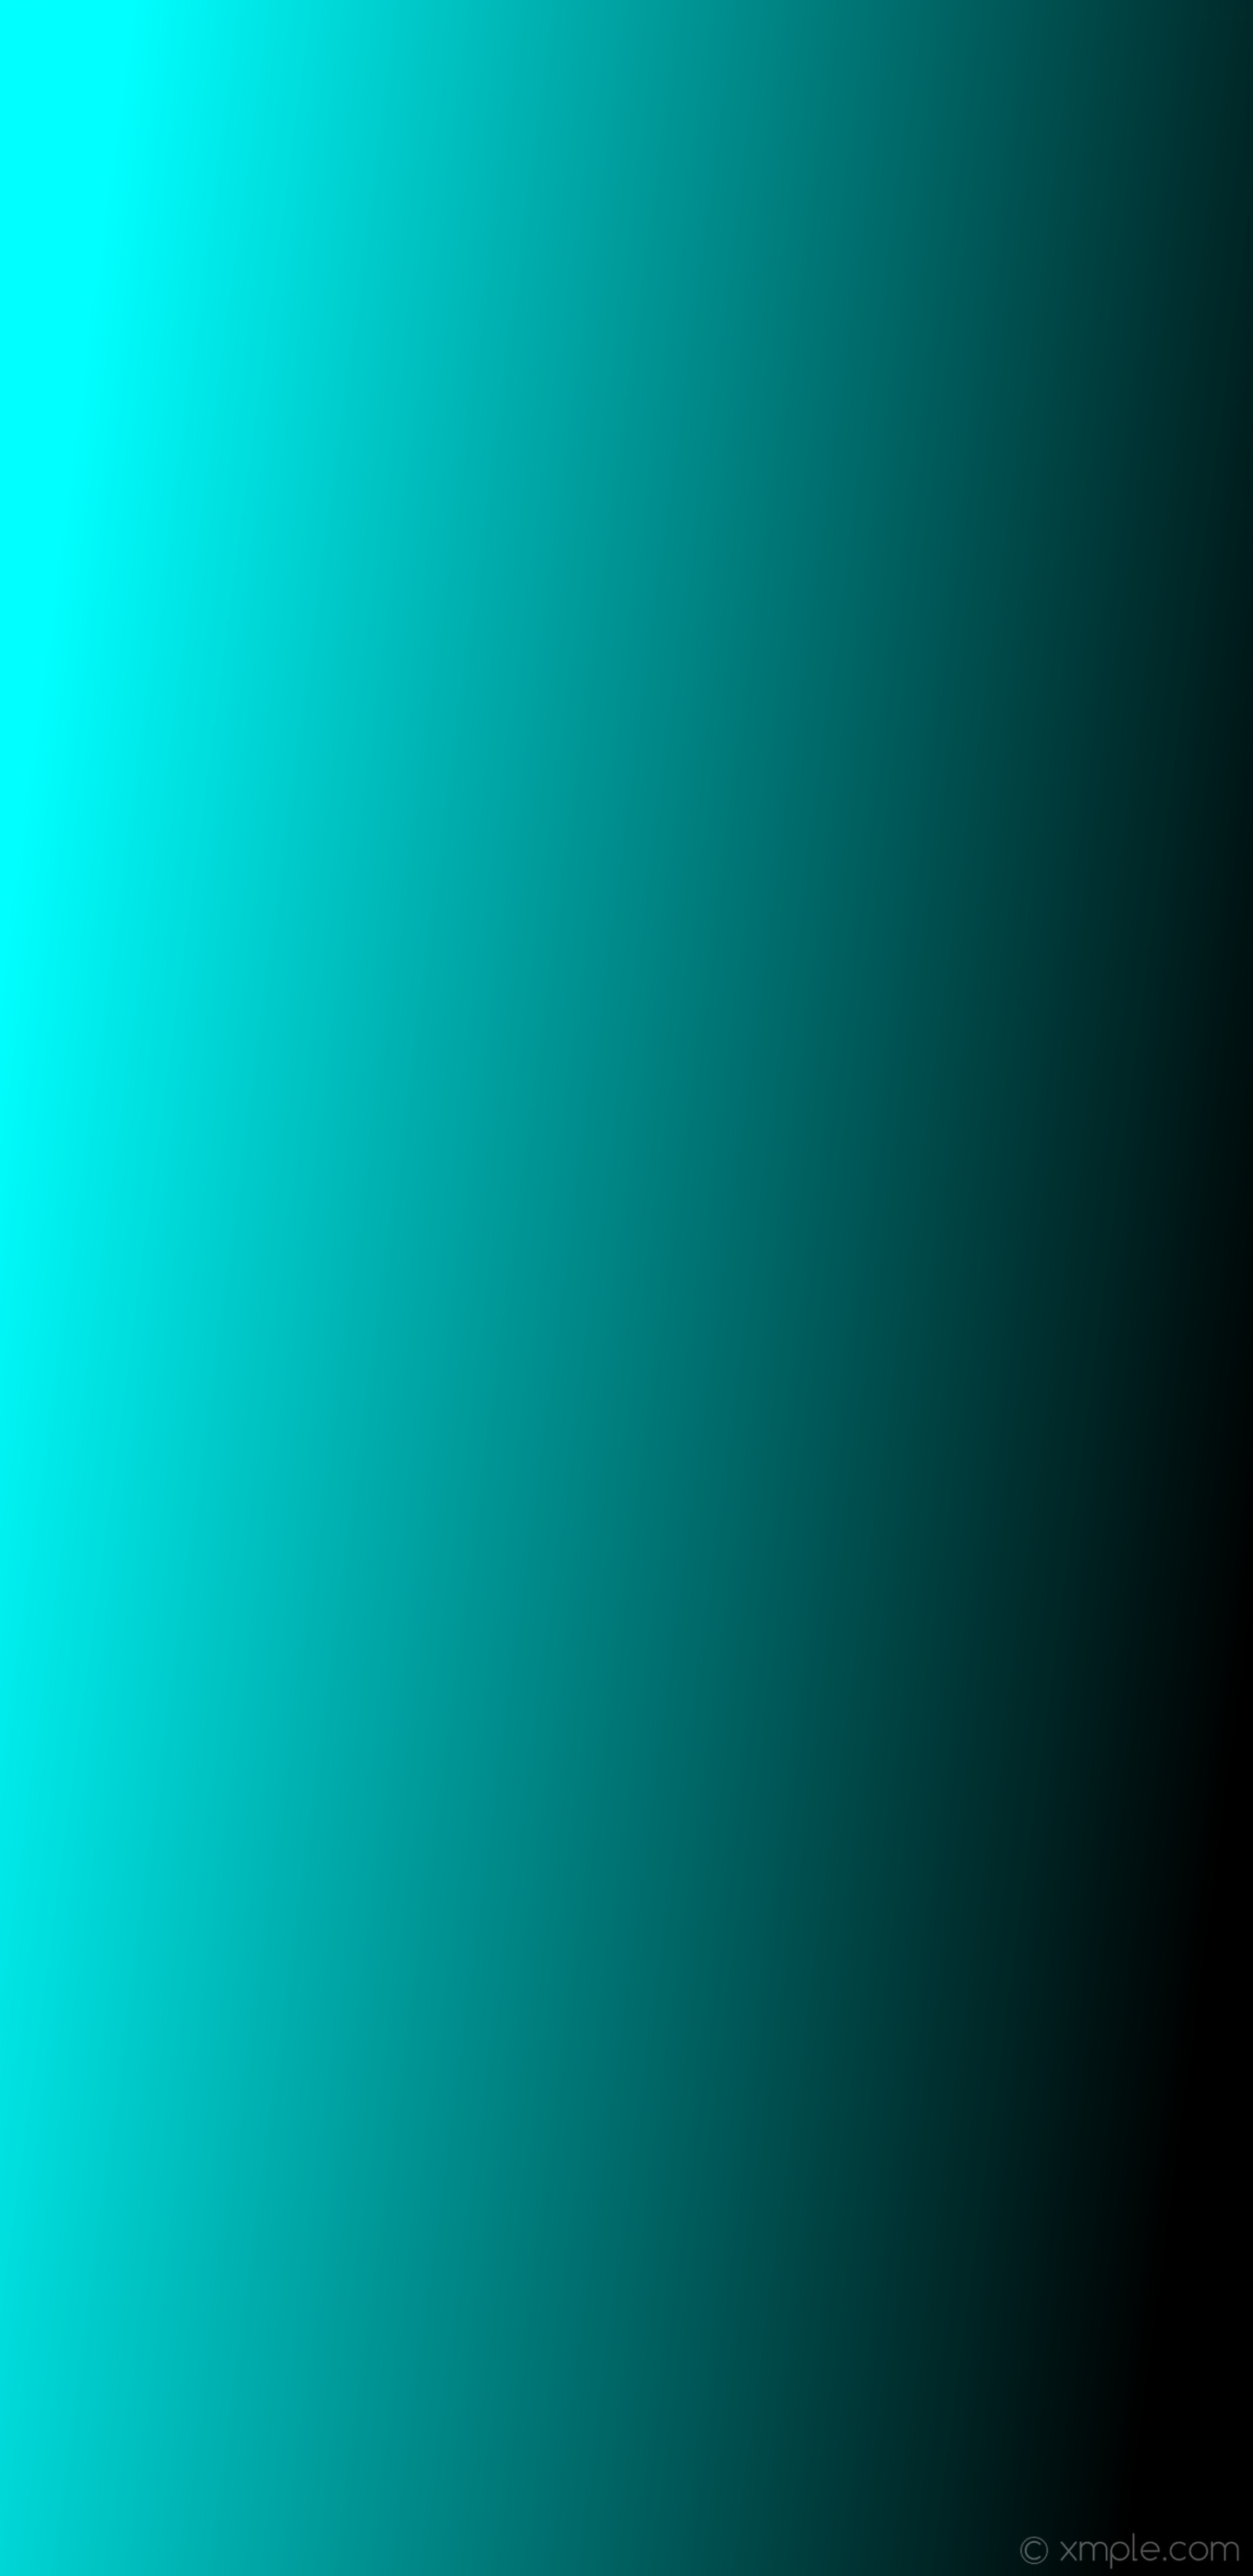 1440x2960 wallpaper gradient linear blue black aqua cyan #00ffff #000000 150Â°